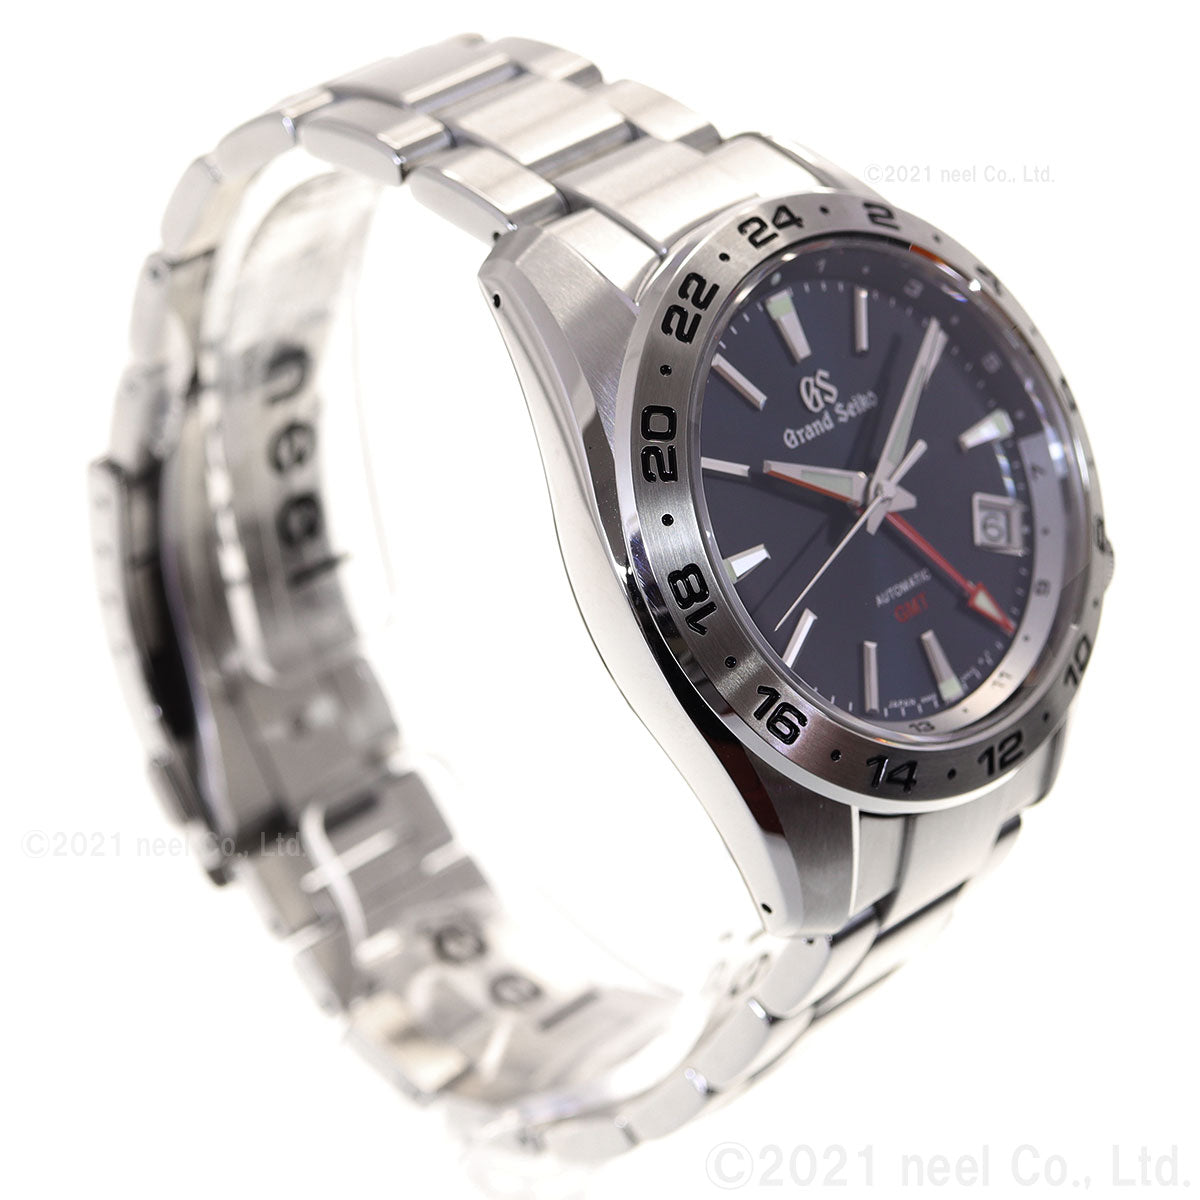 グランドセイコー メカニカル メンズ GMT 腕時計 自動巻き GRAND SEIKO 時計 SBGM245